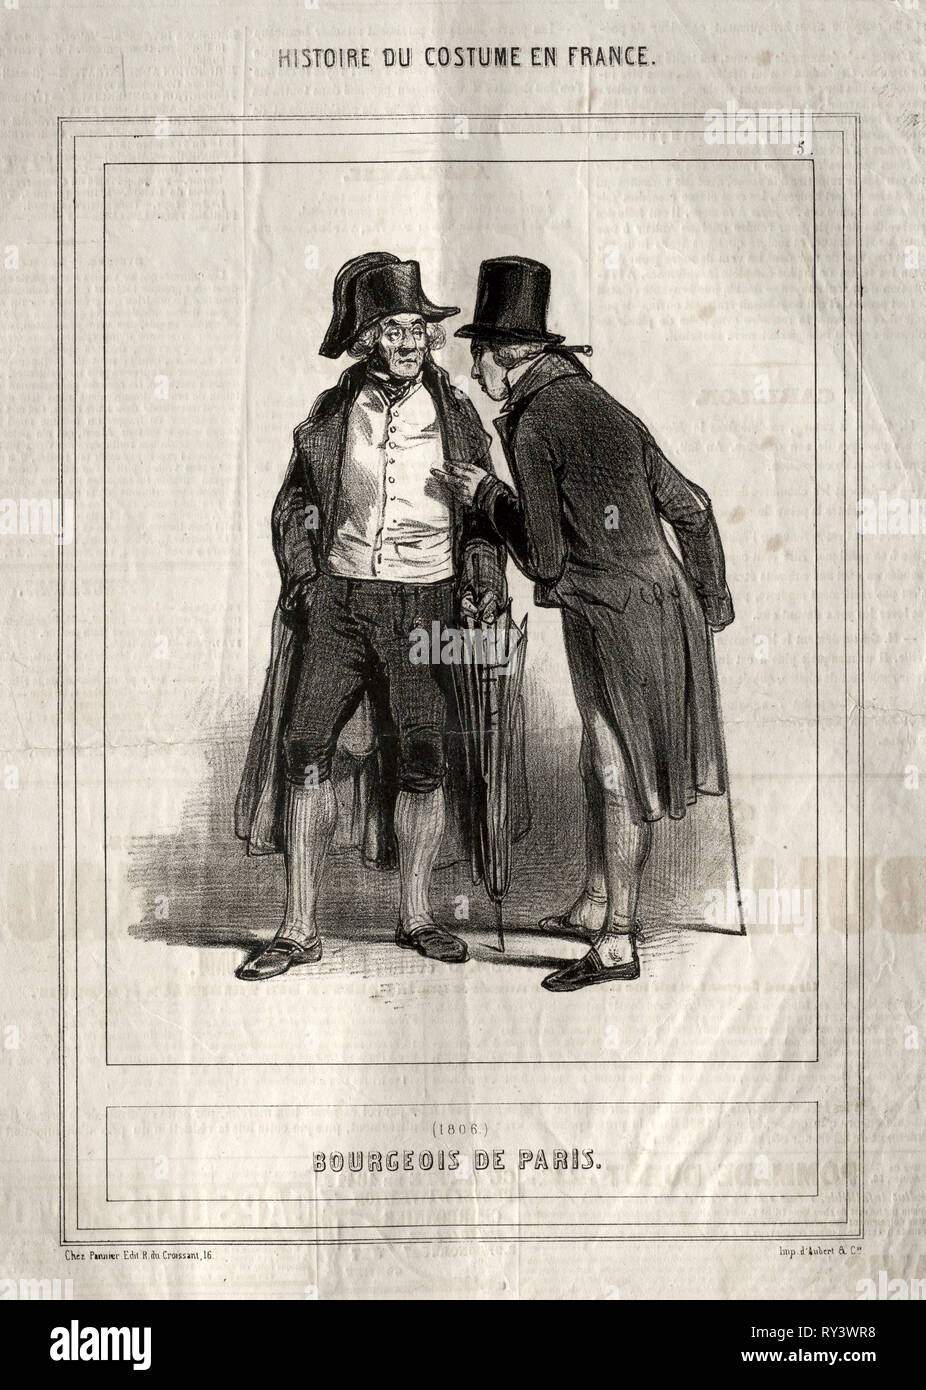 Histoire du Costume en France: Bourgeois de Paris, 1843. Paul Gavarni  (French, 1804-1866). Lithograph Stock Photo - Alamy